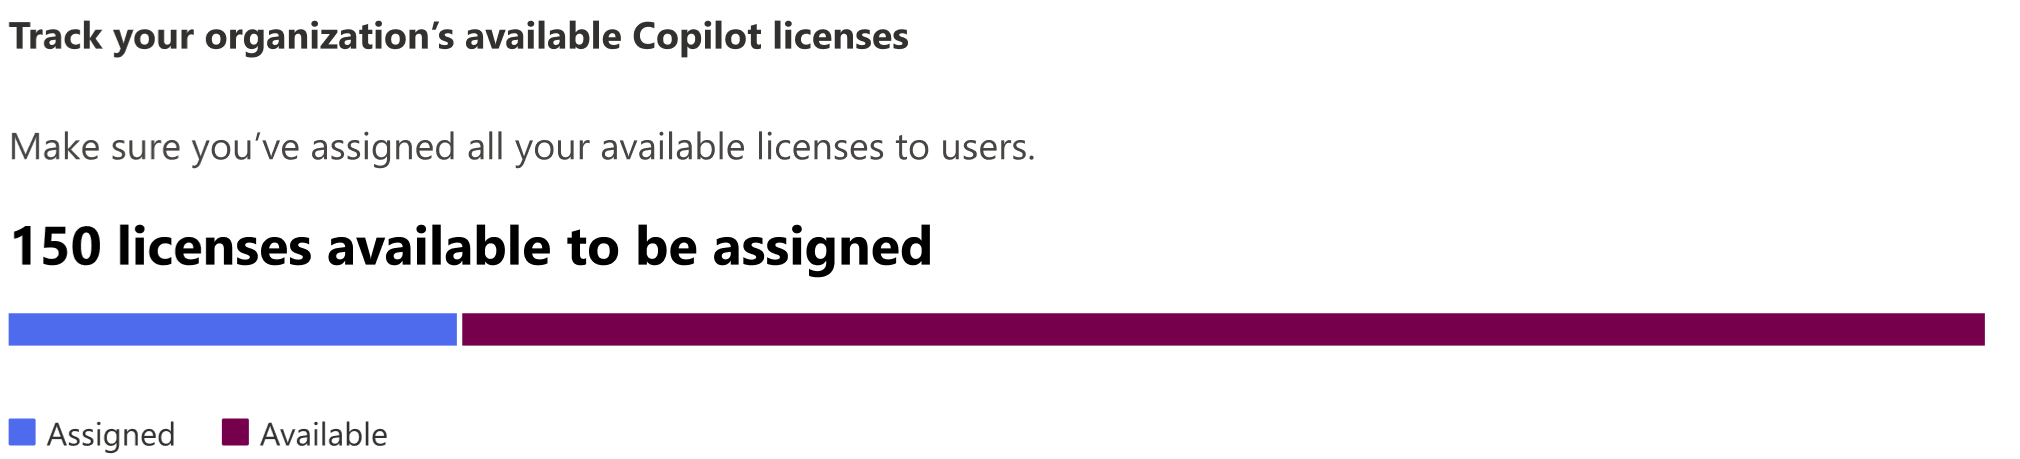 Skærmbillede, der viser en organisations antal tilgængelige licenser, der kan tildeles.